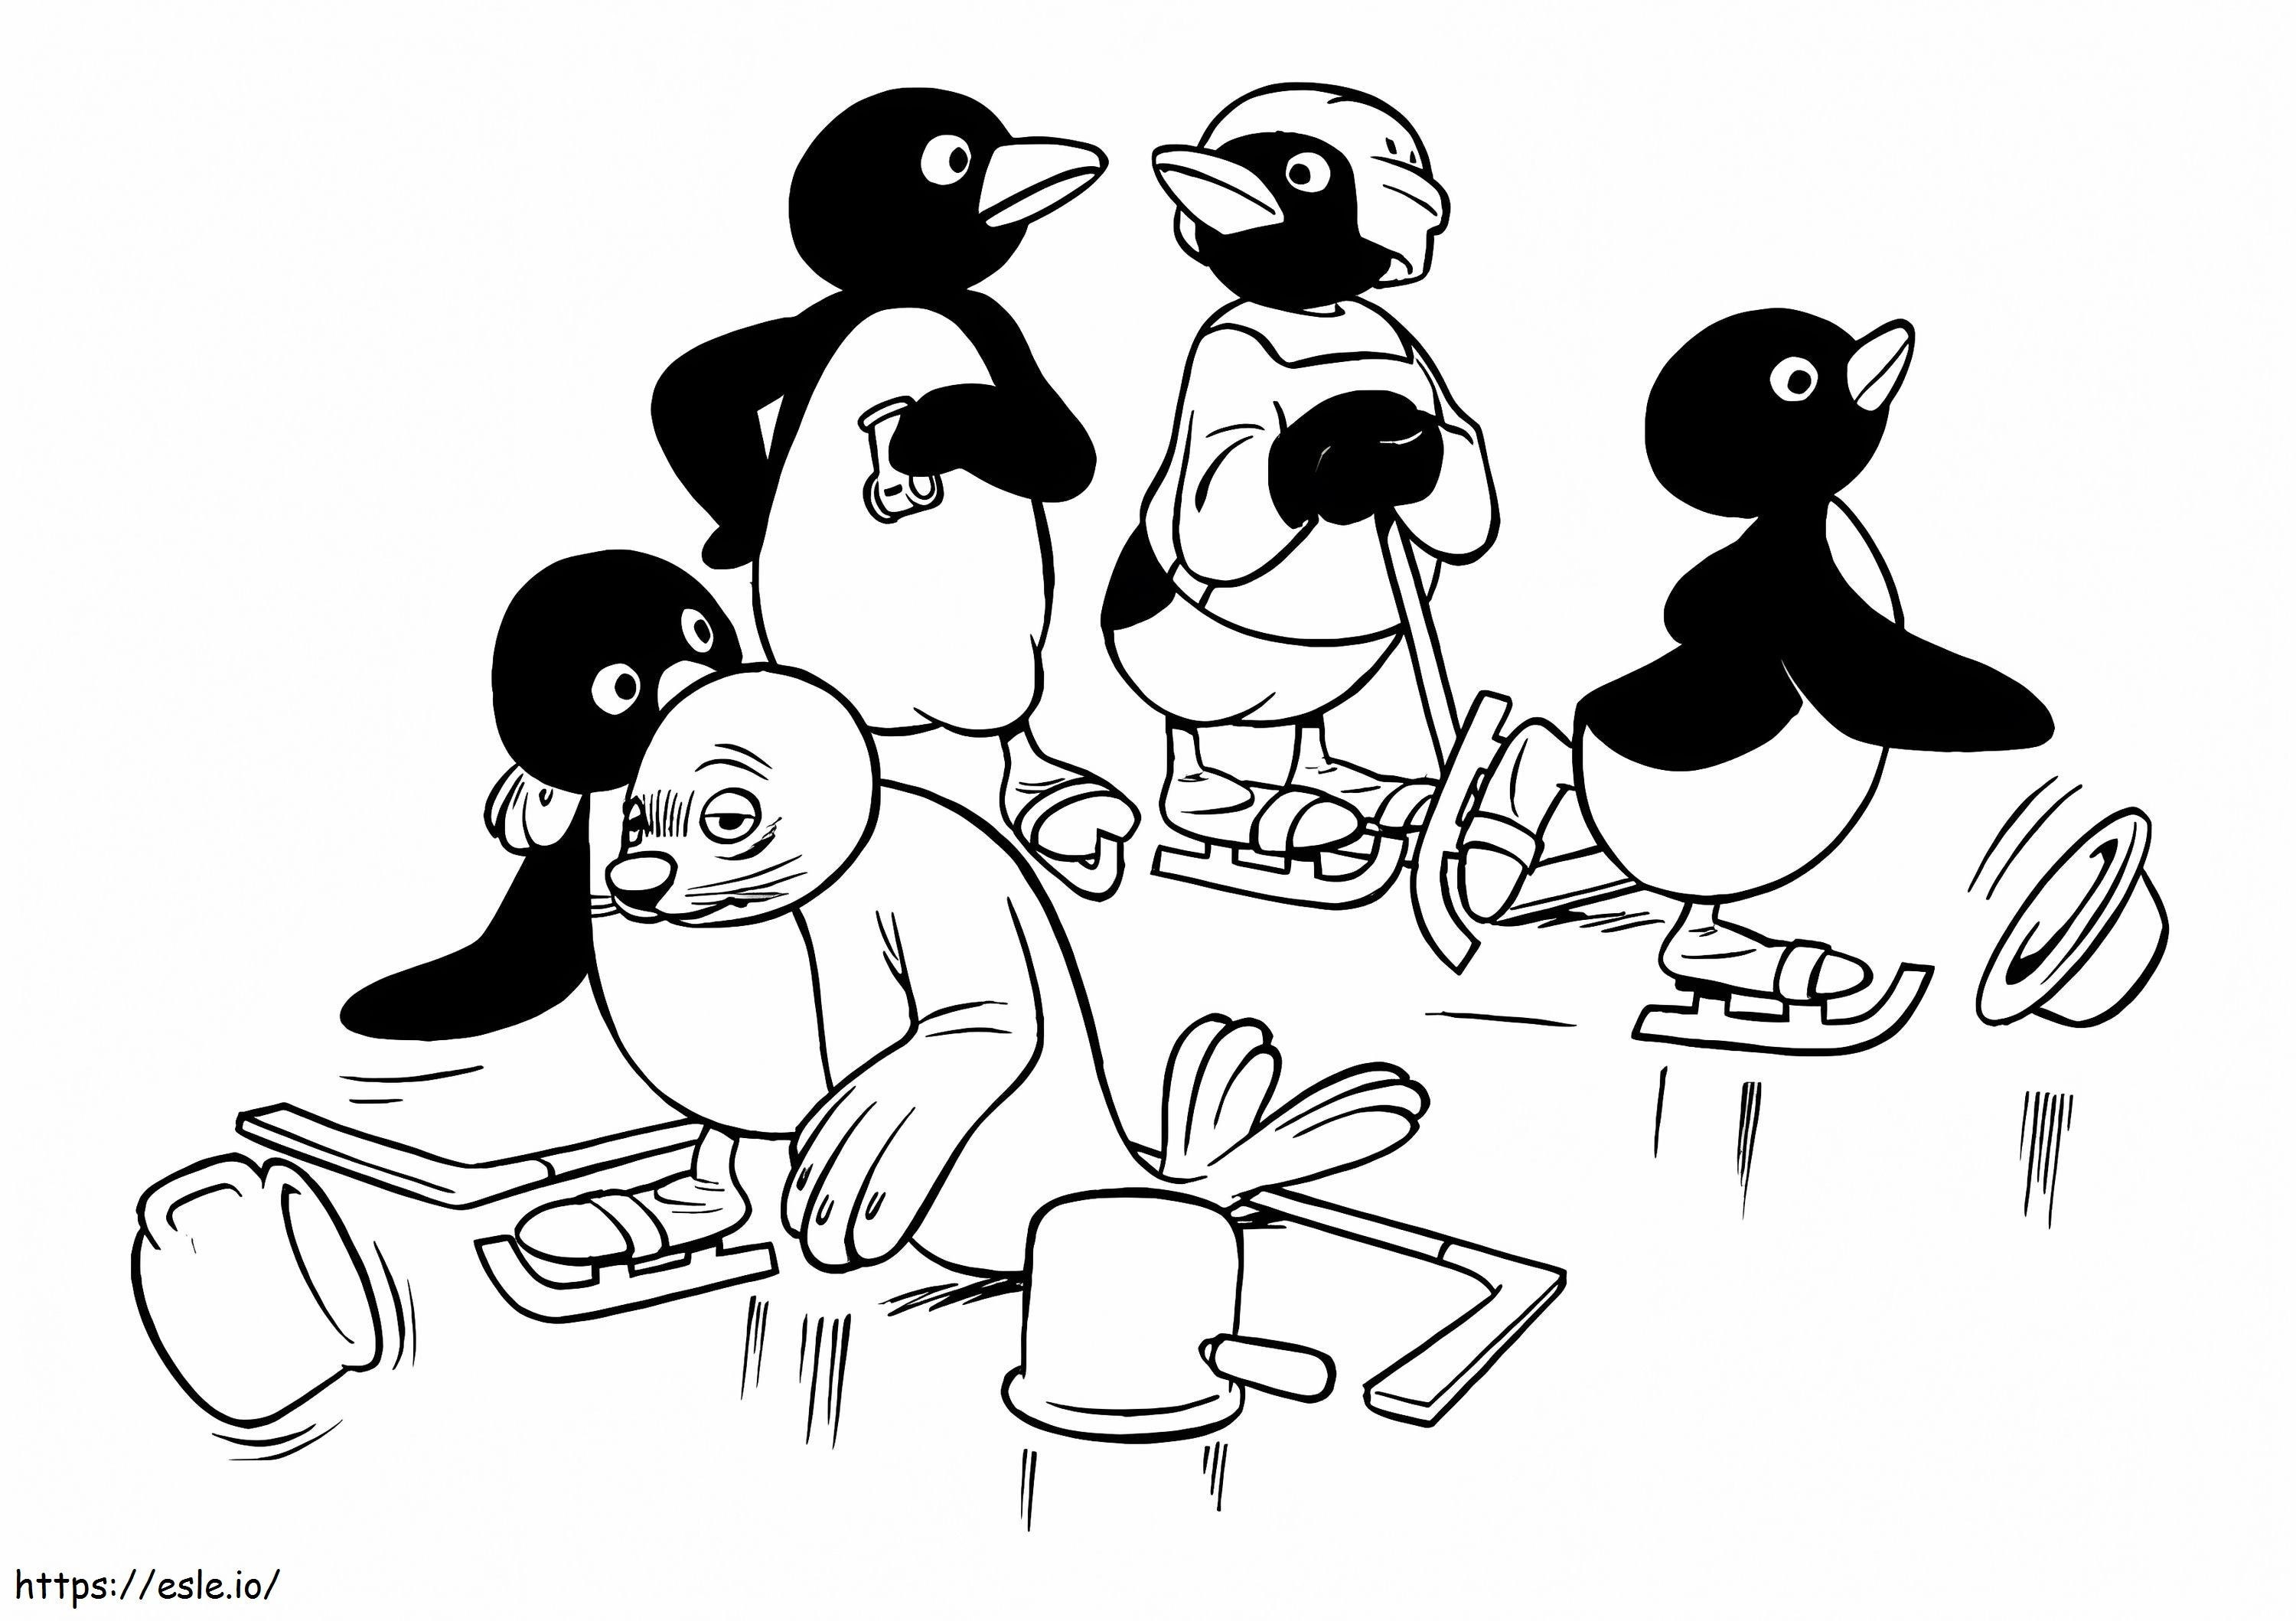 Equipo Pingu para colorear